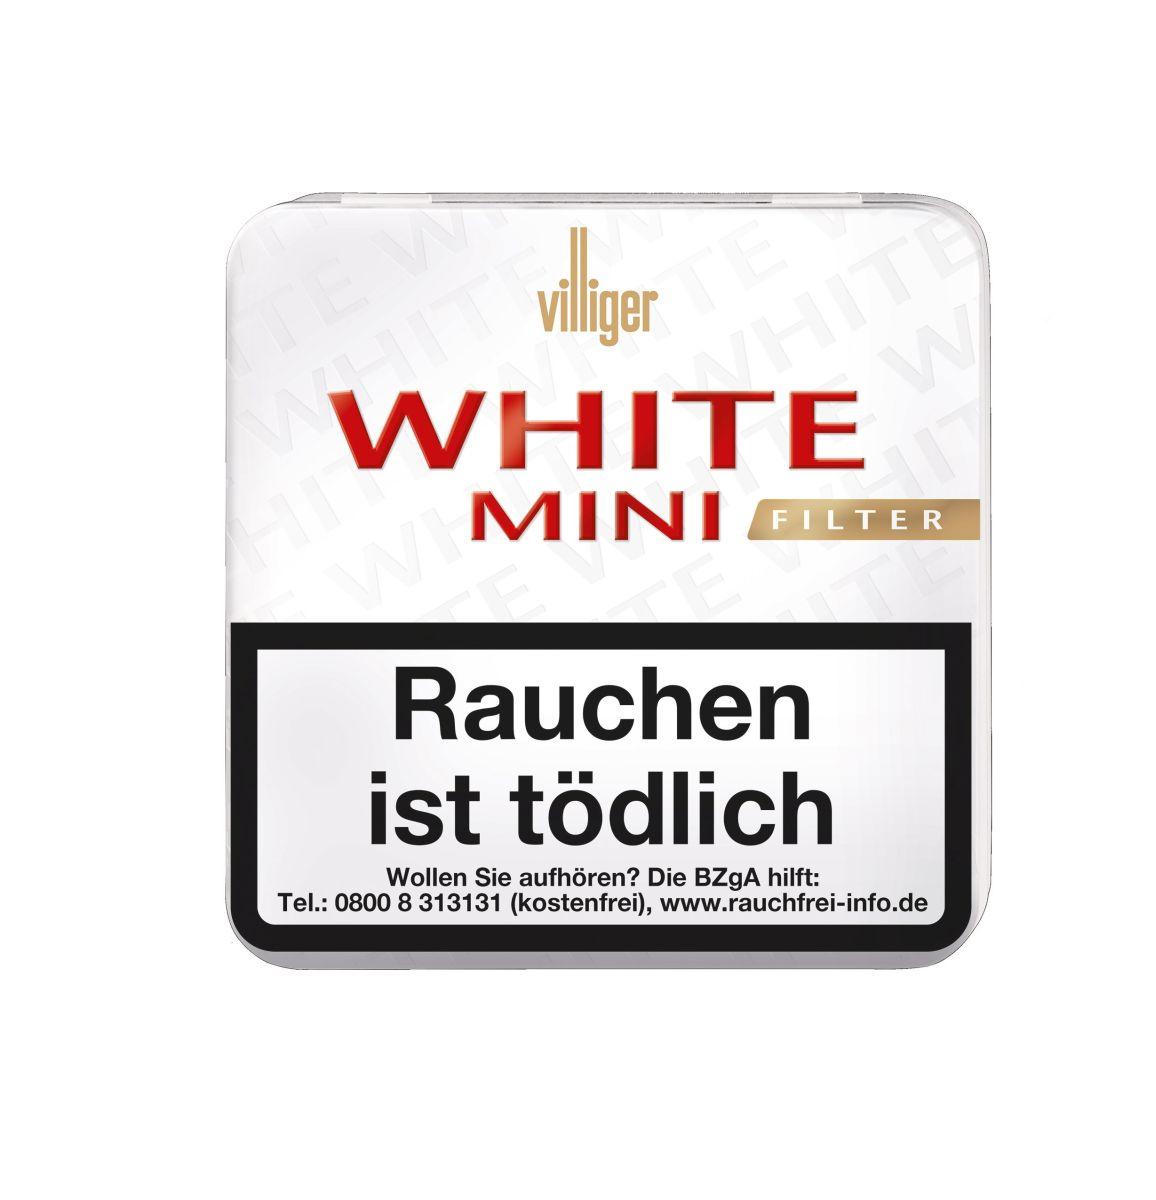 Villiger White Mini Filter Sumatra 10 x 20 Zigarillos